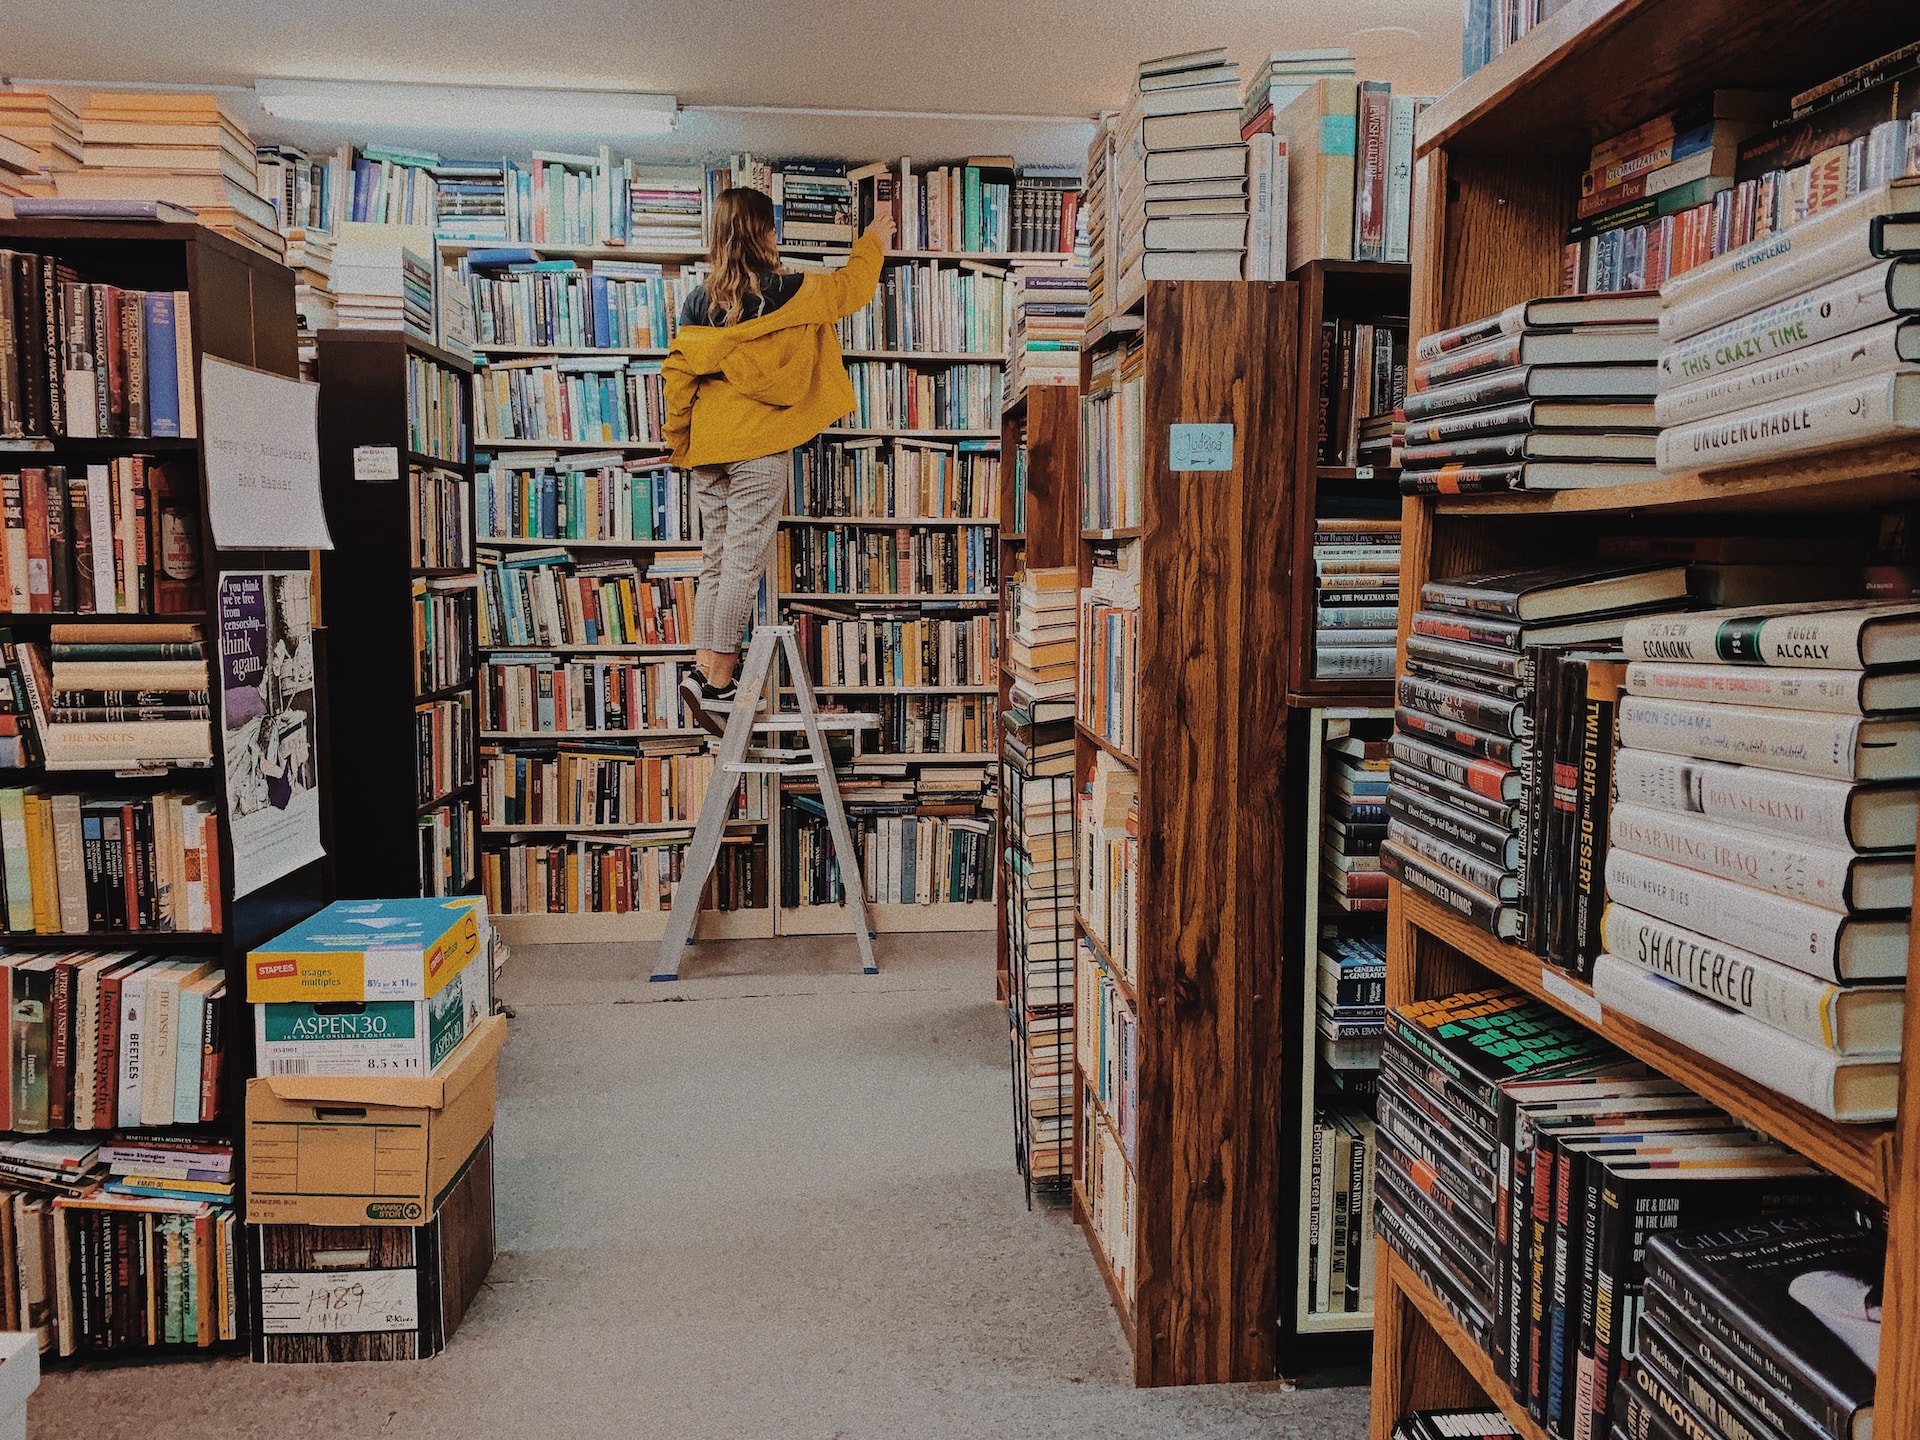 in een boekenwinkel staat een vrouw met een gele jas op een ladder om een boek te pakken